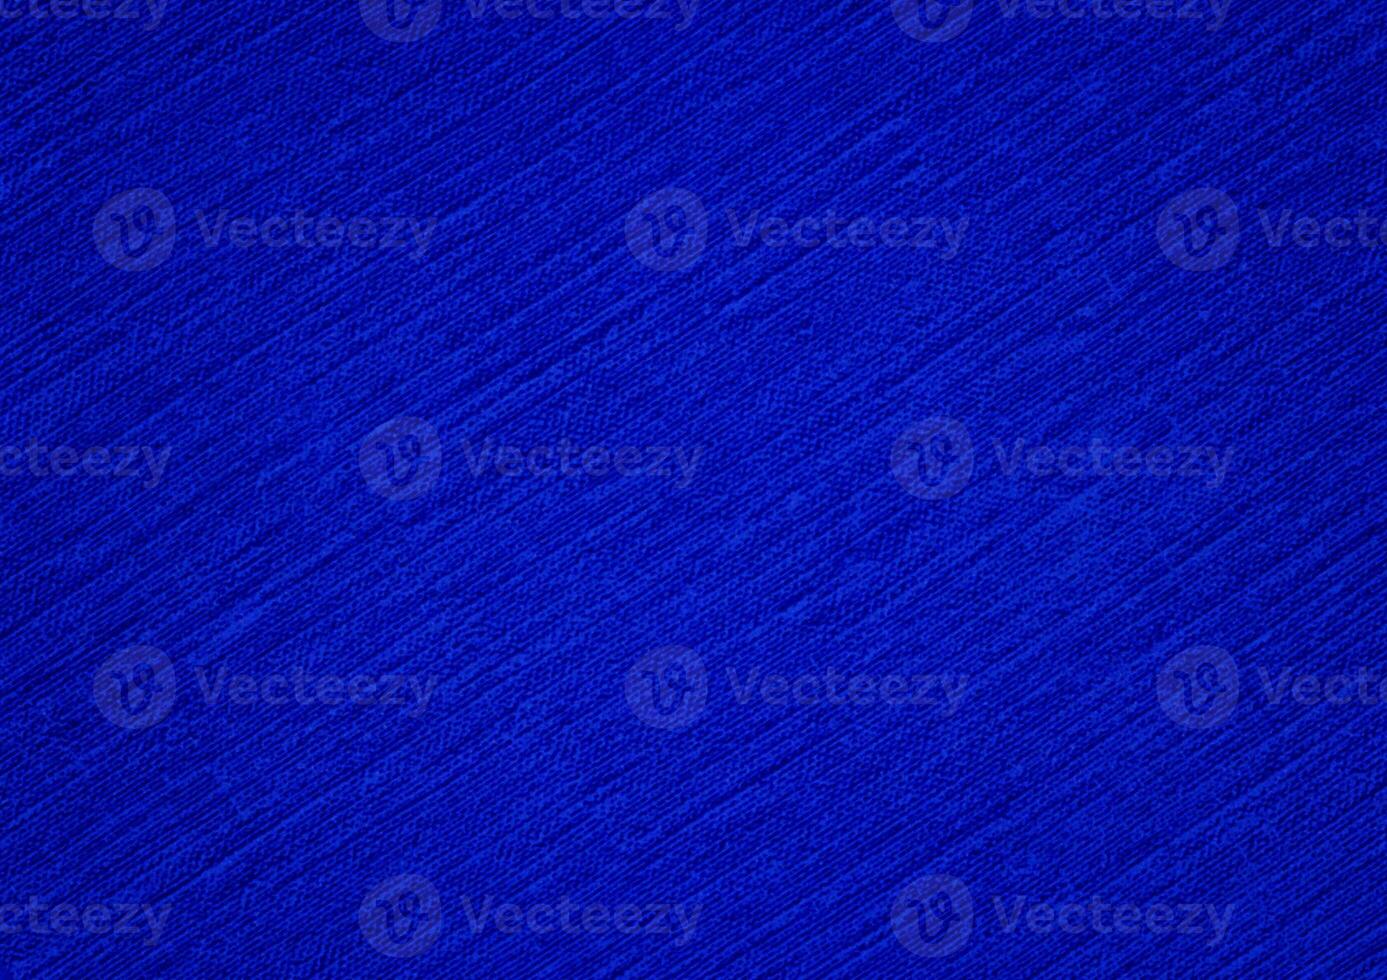 elegant Blau uneben Textur Hintergrund von vereiteln, Papier, Leinwand, Wand, Bürste, Faser, oder malen. realistisch Blau abstrakt Hintergrund. künstlerisch Blau abstrakt Hintergrund. zum Blau Hintergrund Textur. foto